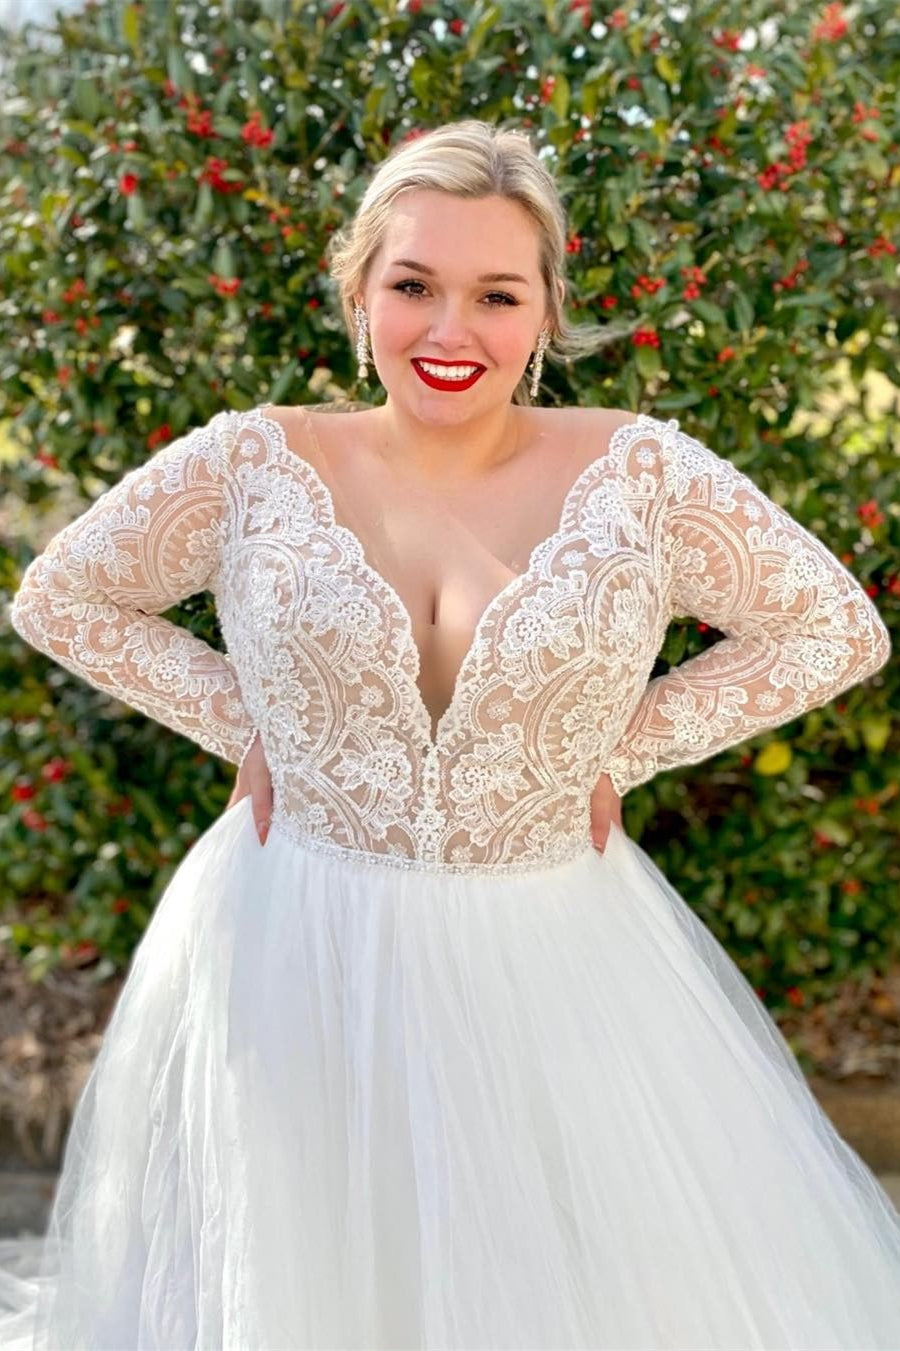 White Lace V-Neck Long Sleeve Backless Wedding Dress